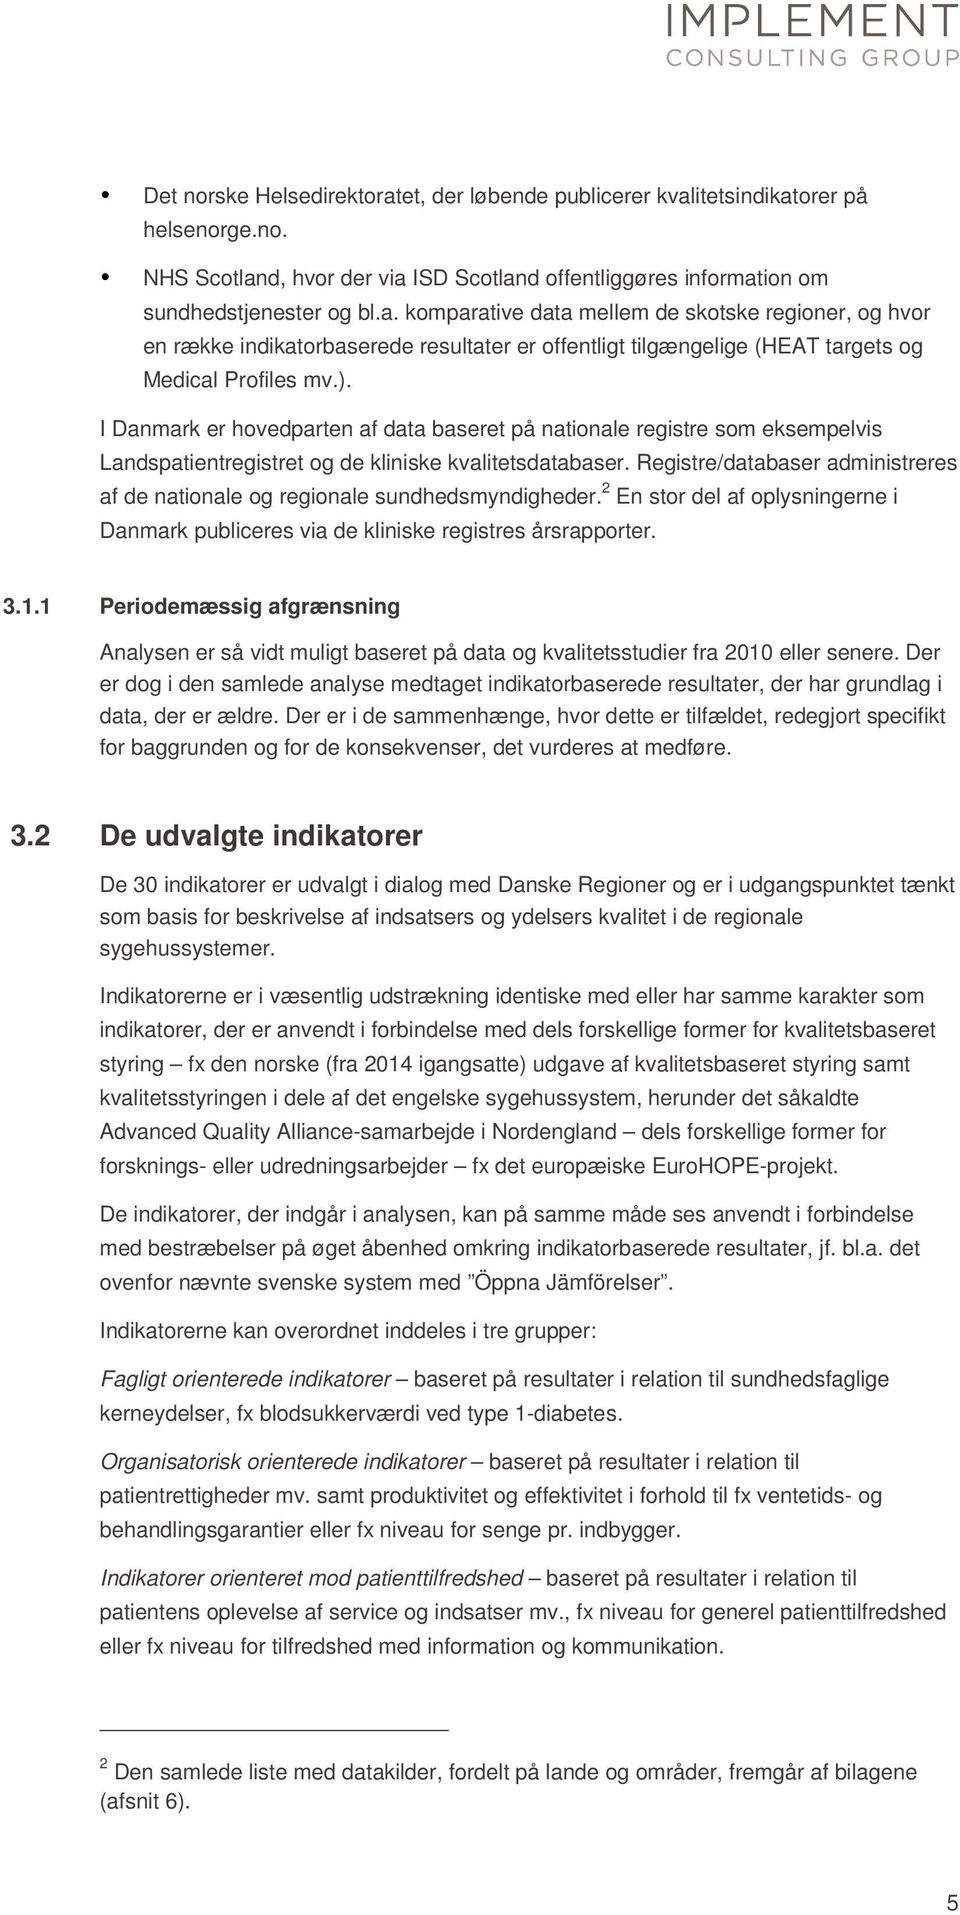 Registre/databaser administreres af de nationale og regionale sundhedsmyndigheder. 2 En stor del af oplysningerne i Danmark publiceres via de kliniske registres årsrapporter. 3.1.